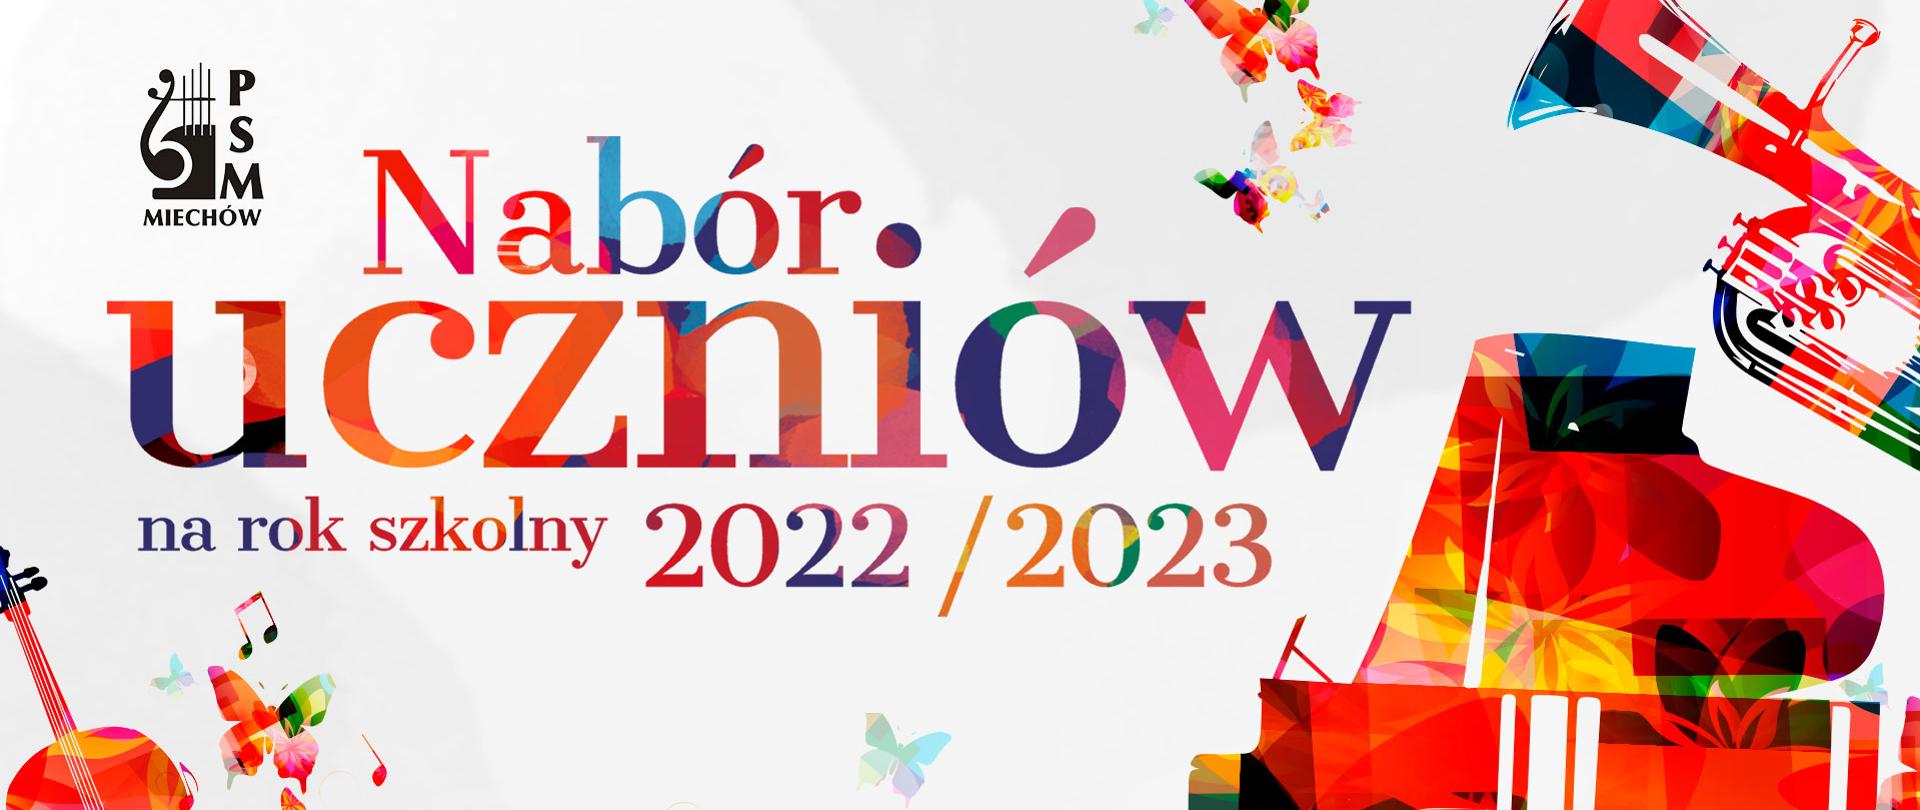 Plakat rekrutacyjny na rok szkolny 2022/23. Na plakacie są umieszczone kolorowe instrumenty oraz nuty.